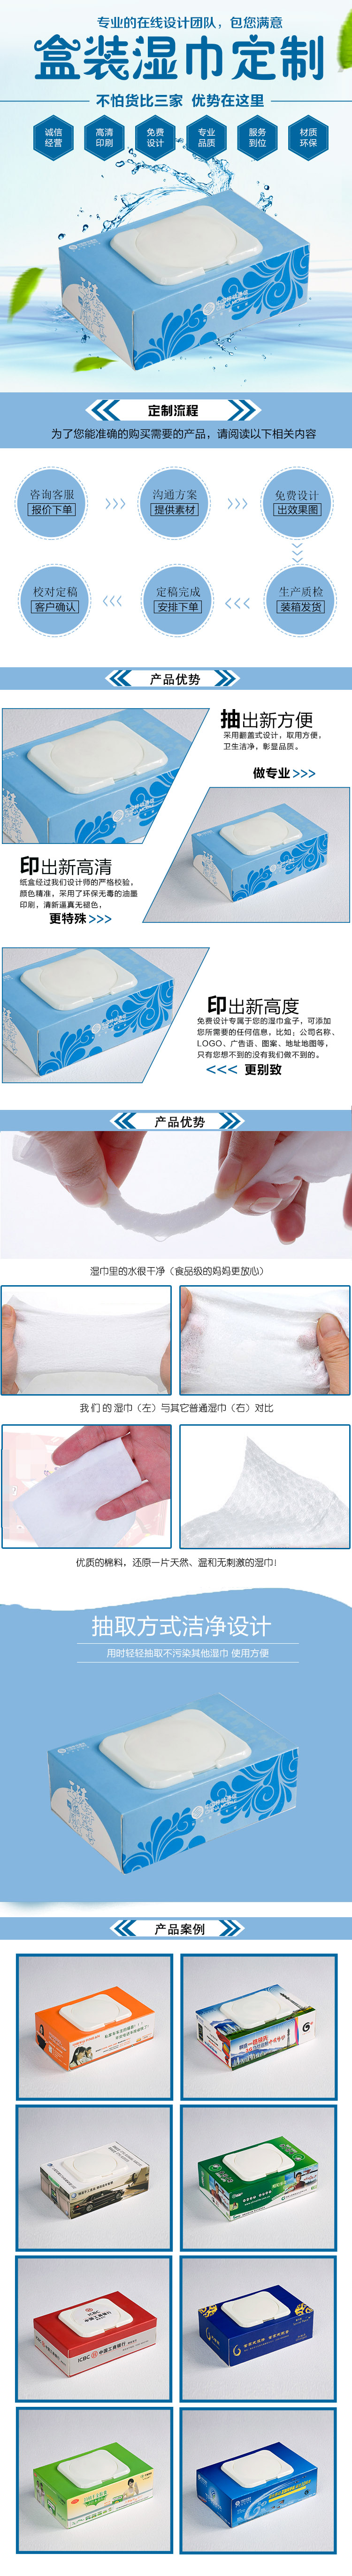 移動濕紙巾.jpg